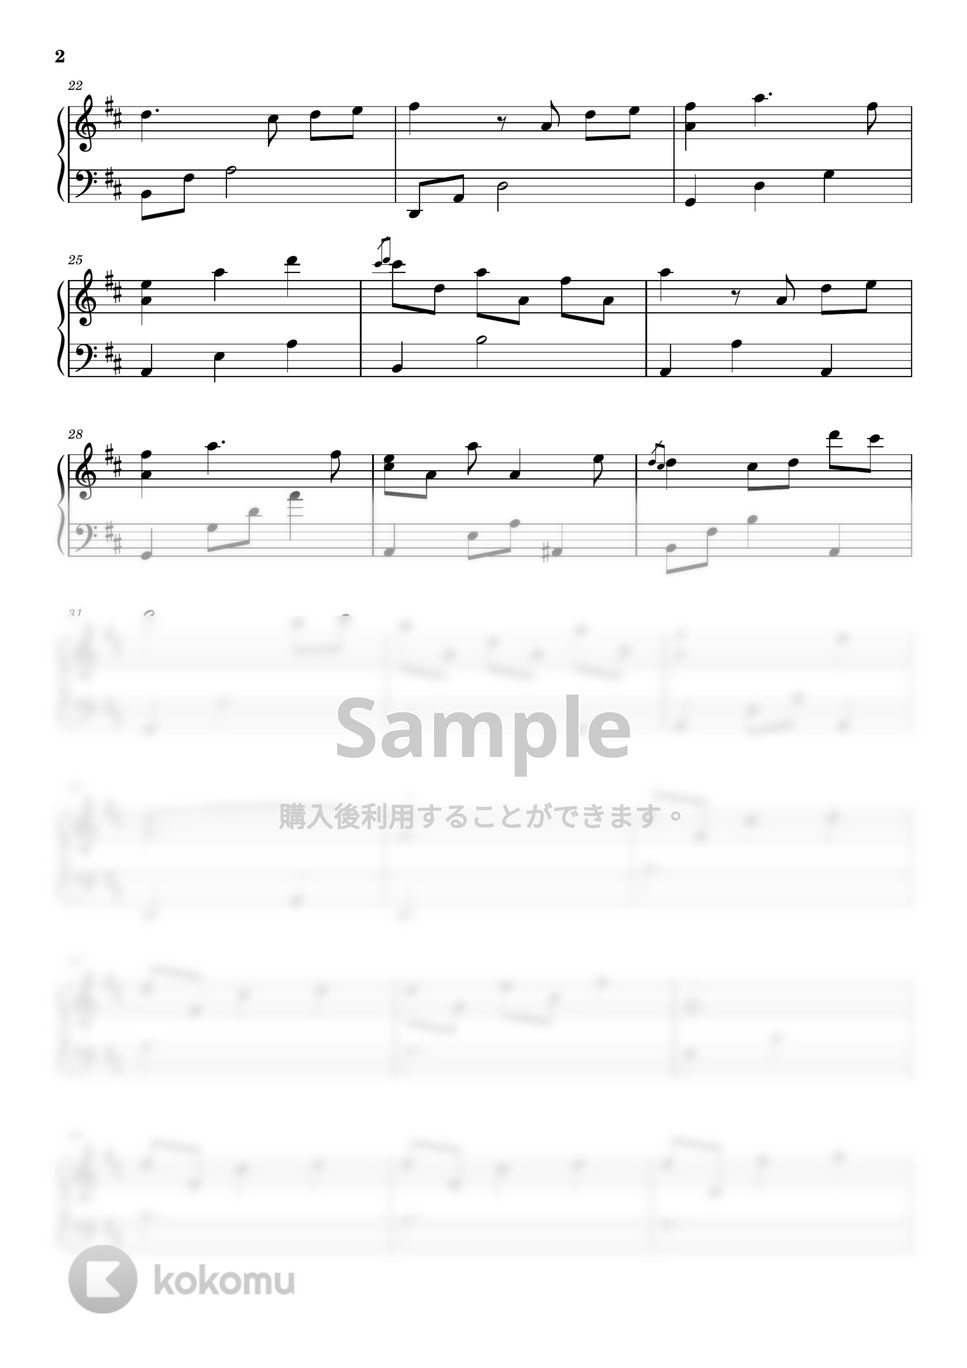 得田真裕 - グッドドクター (ピアノソロ上級) by pianon